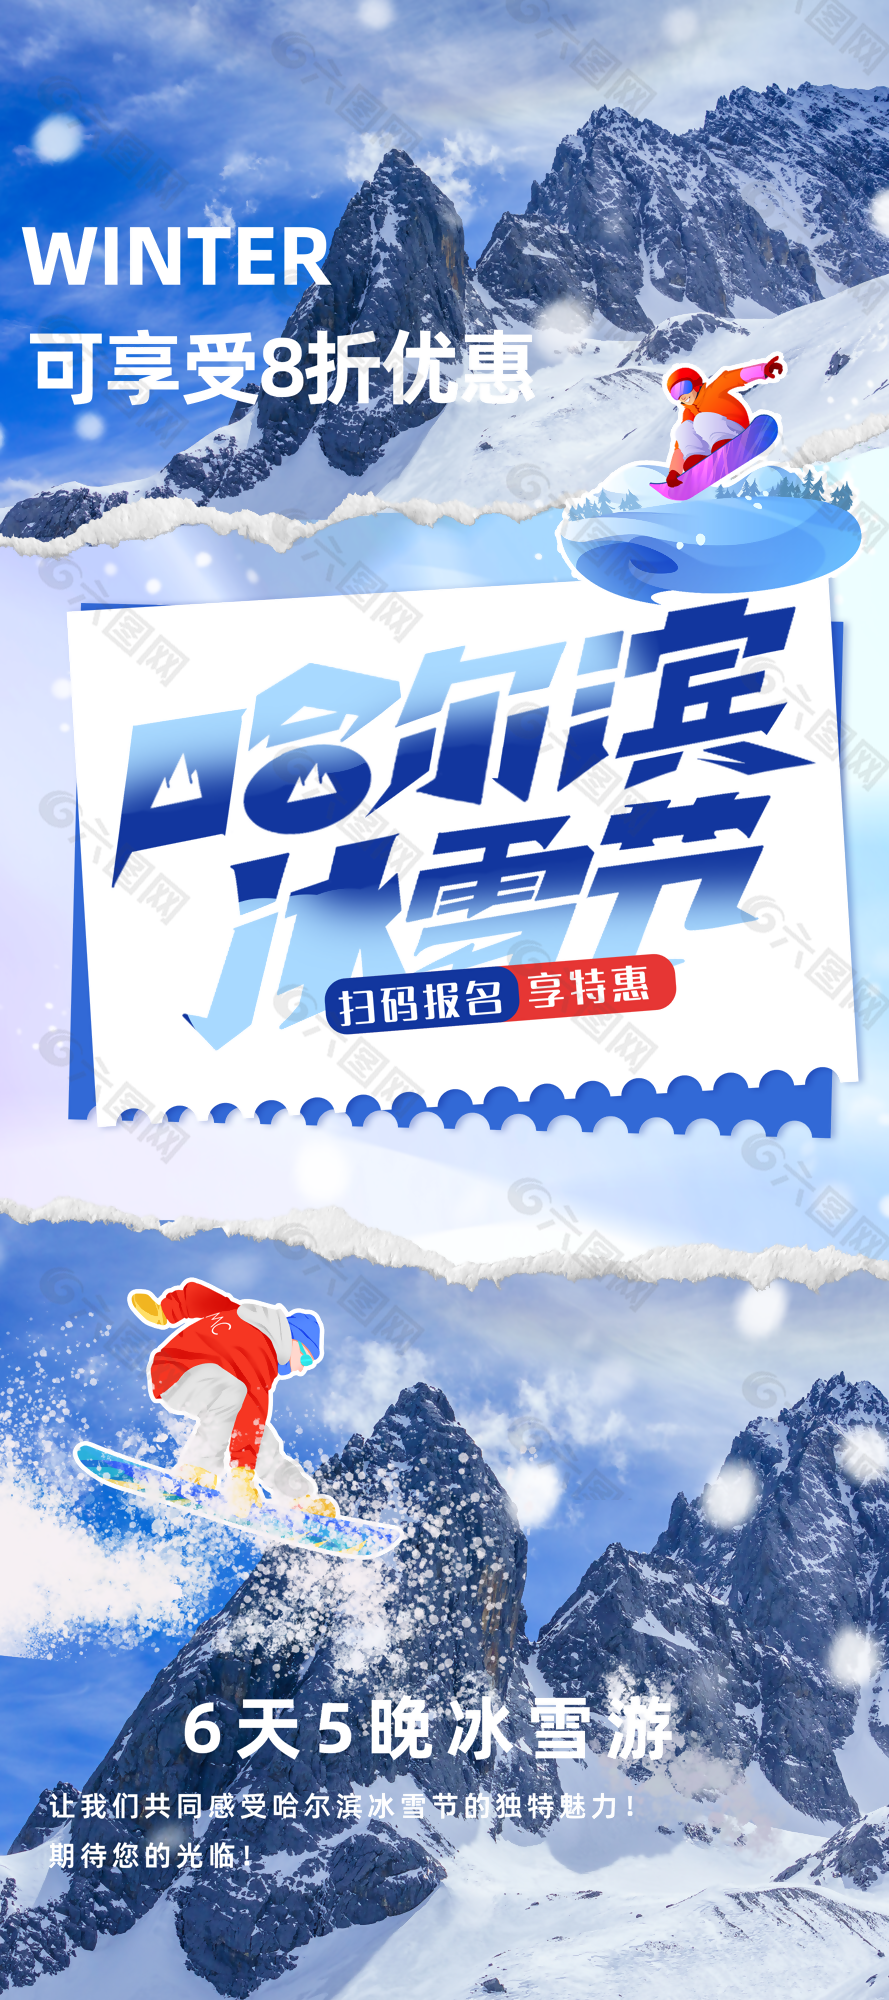 创意哈尔滨冰雪节雪乡之旅滑雪海报设计